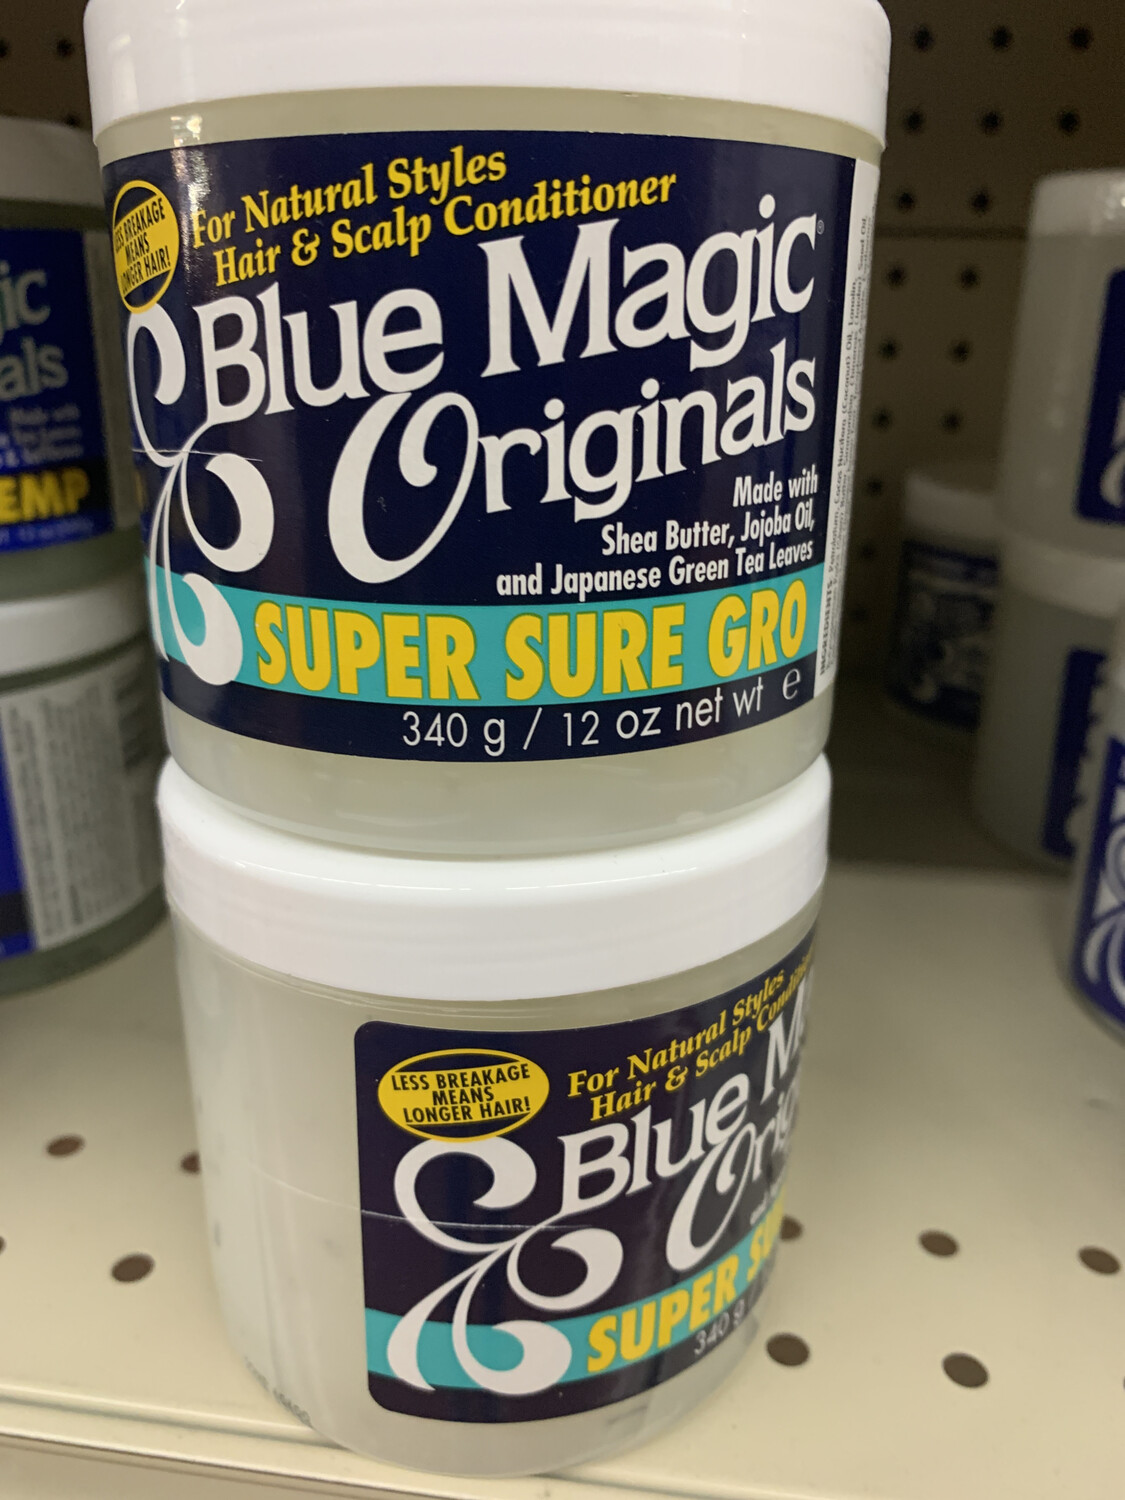 Blue Magic Originals Super Sure Gro